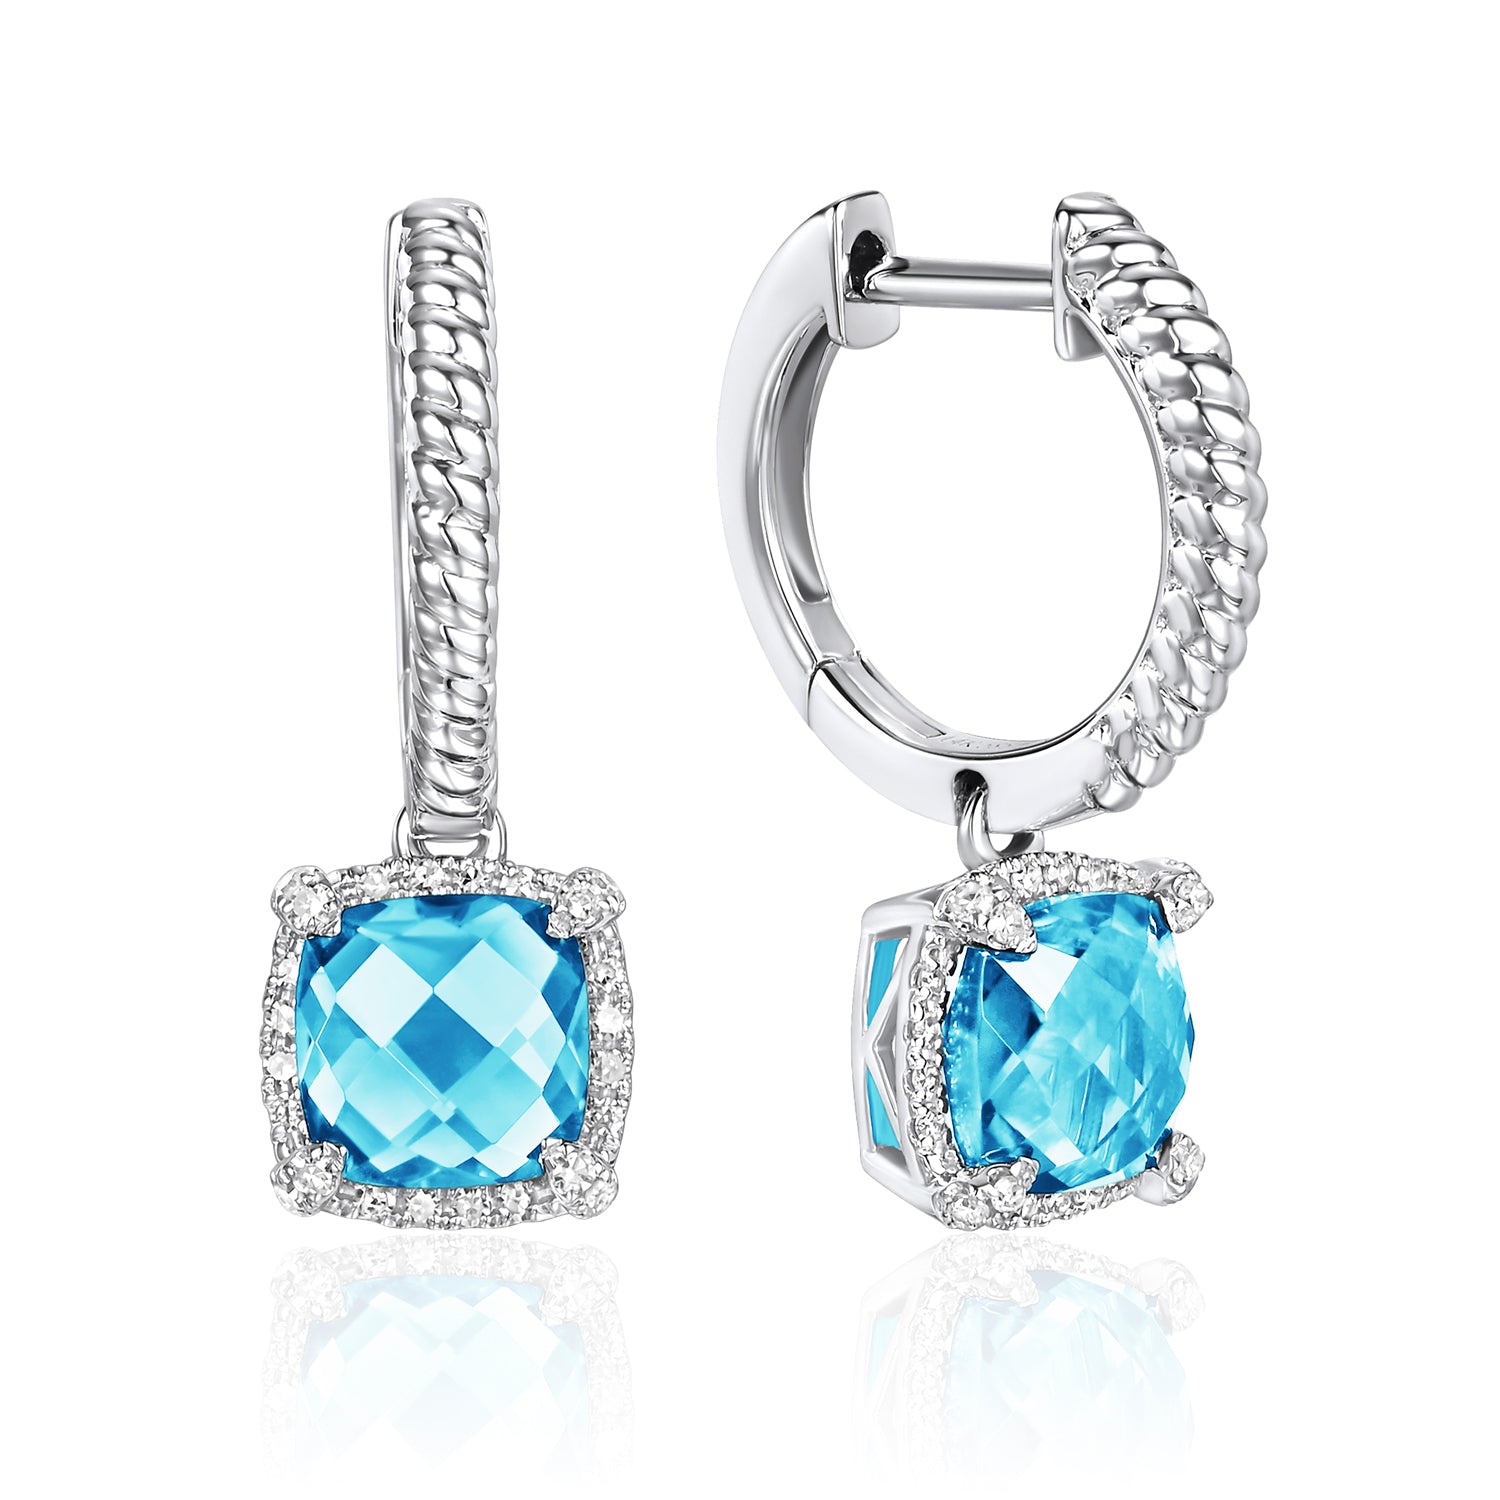 Oval Cut Blue Sapphire Stud Earrings (2.00cttw) AAAAA Quality